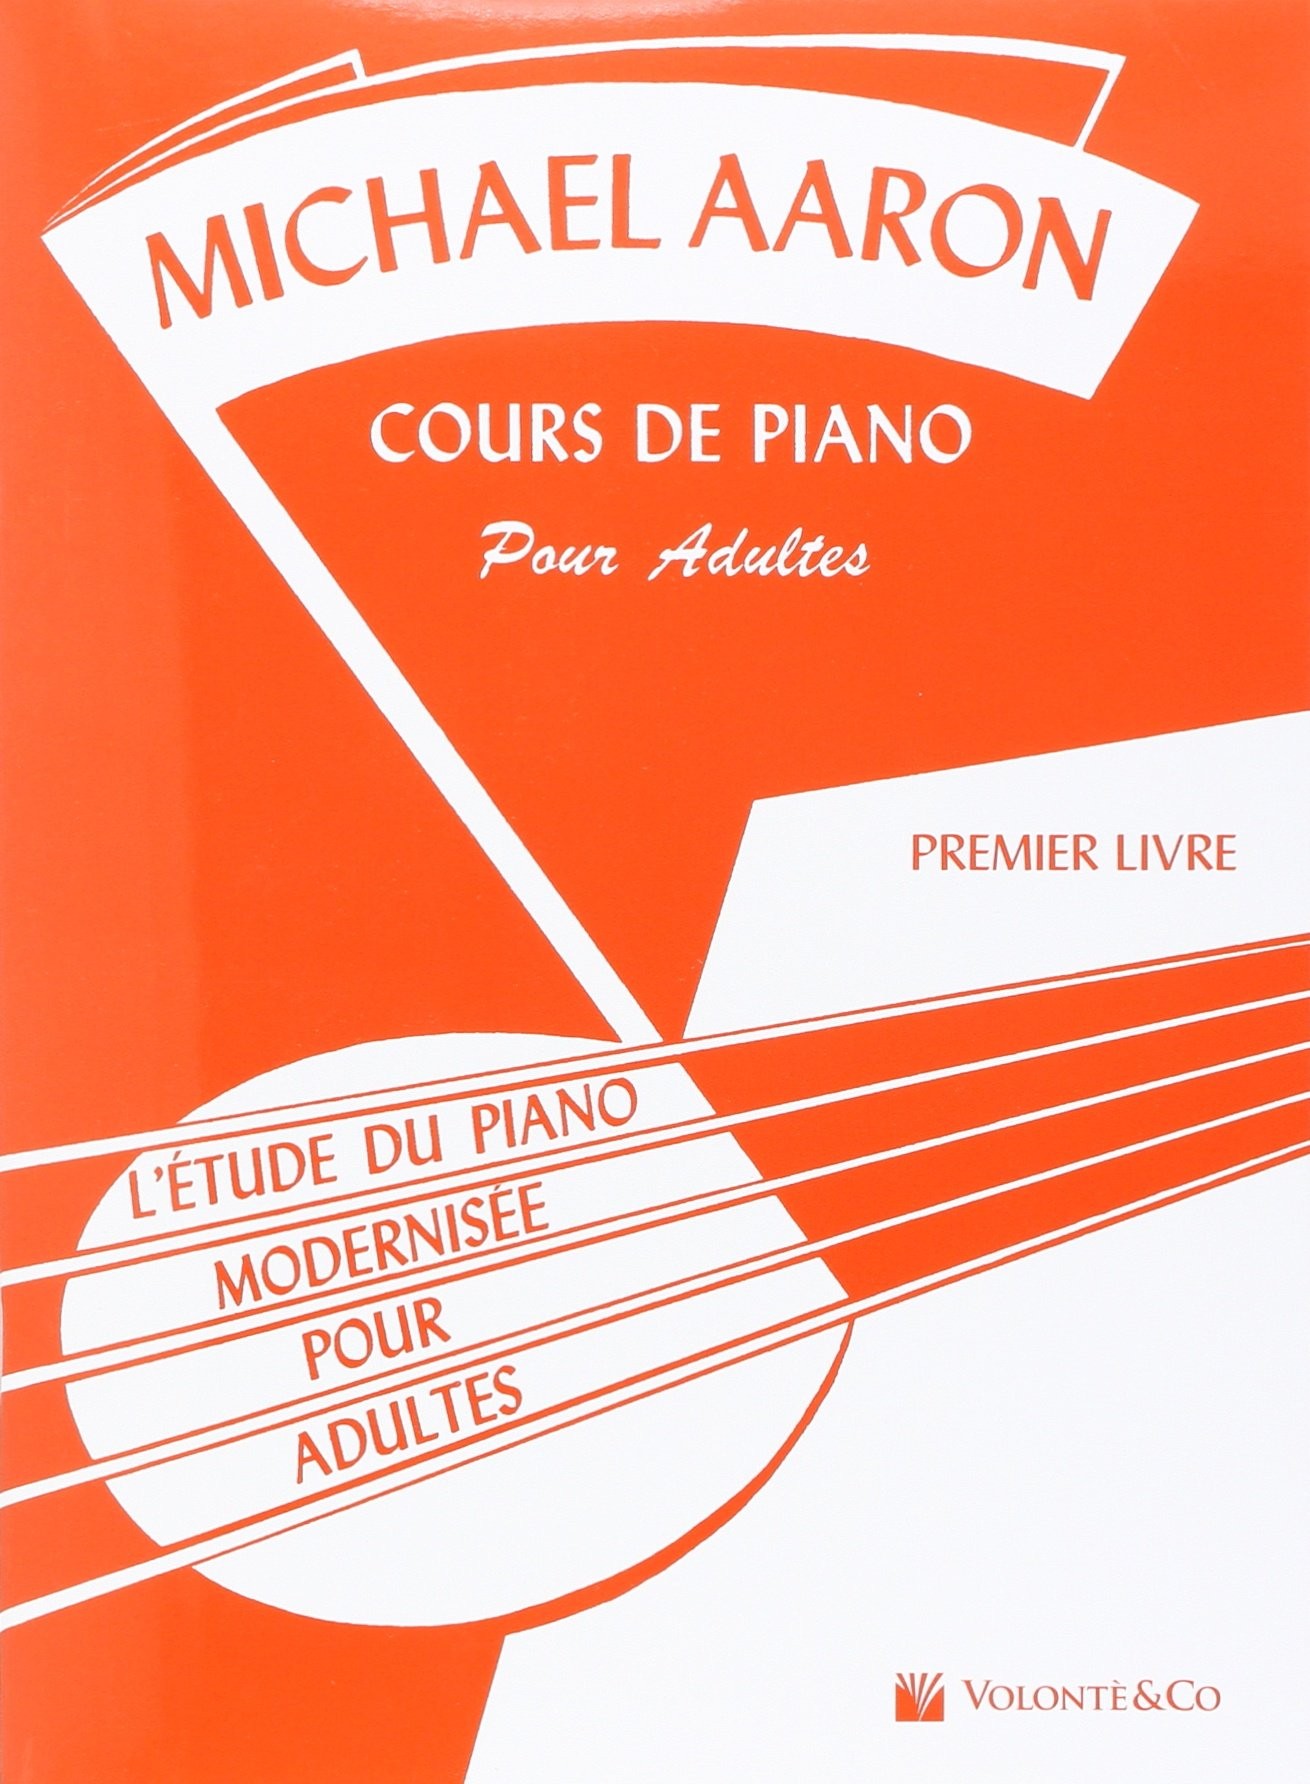 https://www.atelierdupiano.fr/4767/aaron-m%C3%A9thode-de-piano-cours-de-piano-pour-adultes-premier-livre.jpg